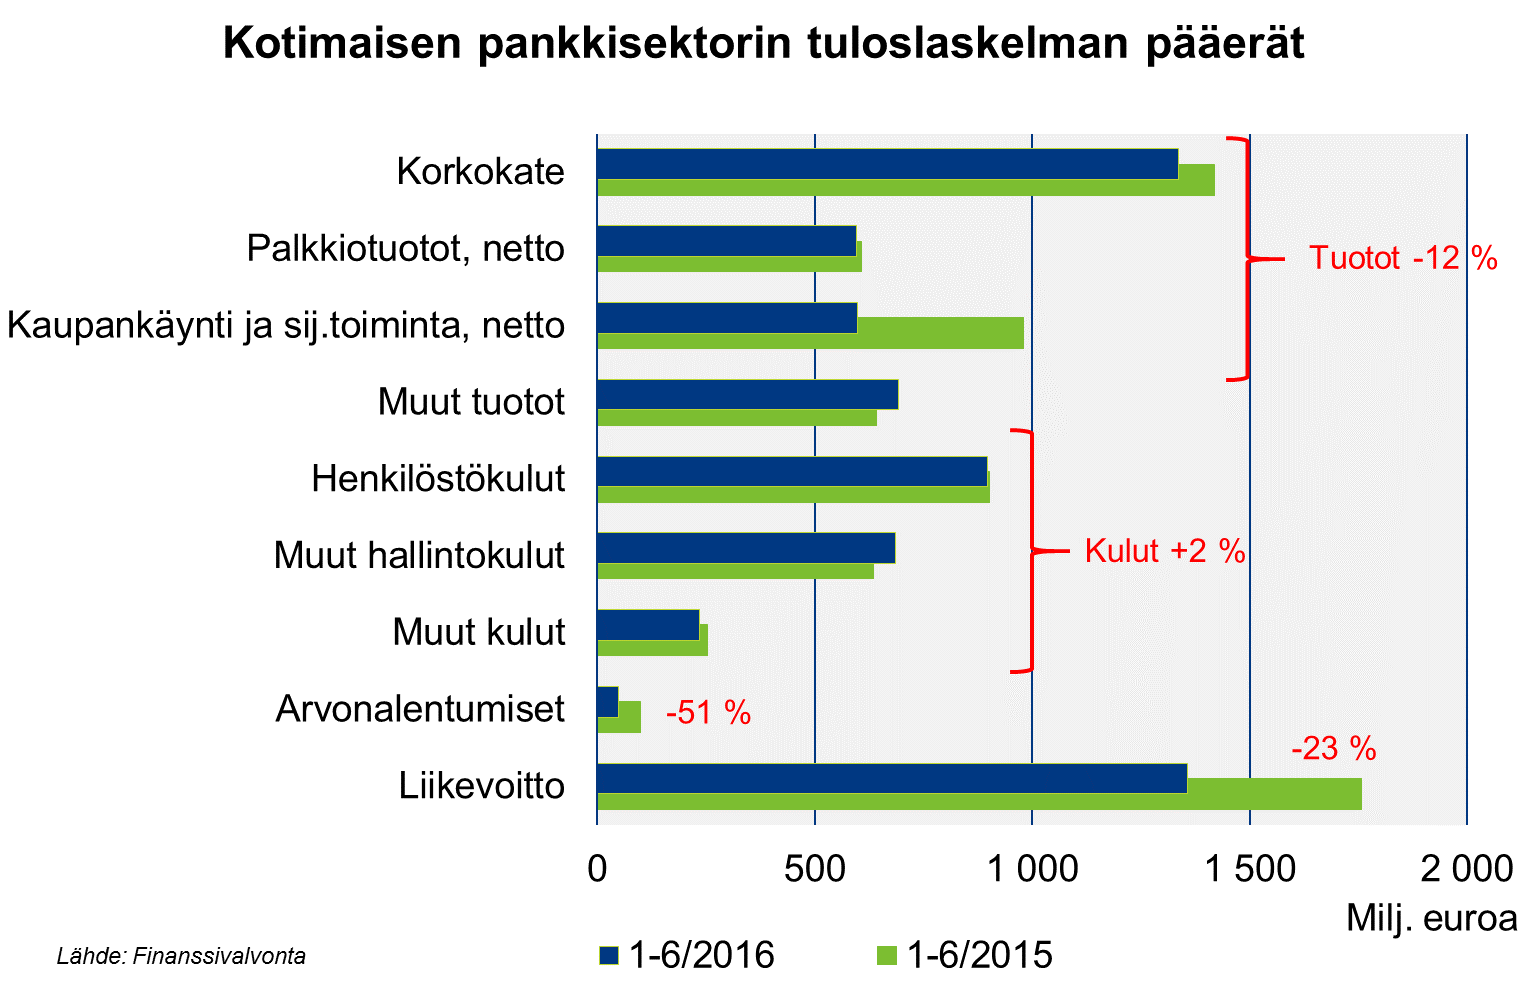 Suomen pankkisektorin tuottorakenne aiempaa riskipitoisempi Korkokate jatkoi supistumistaan, ja sen laskua paikattu muilla tuottoerillä